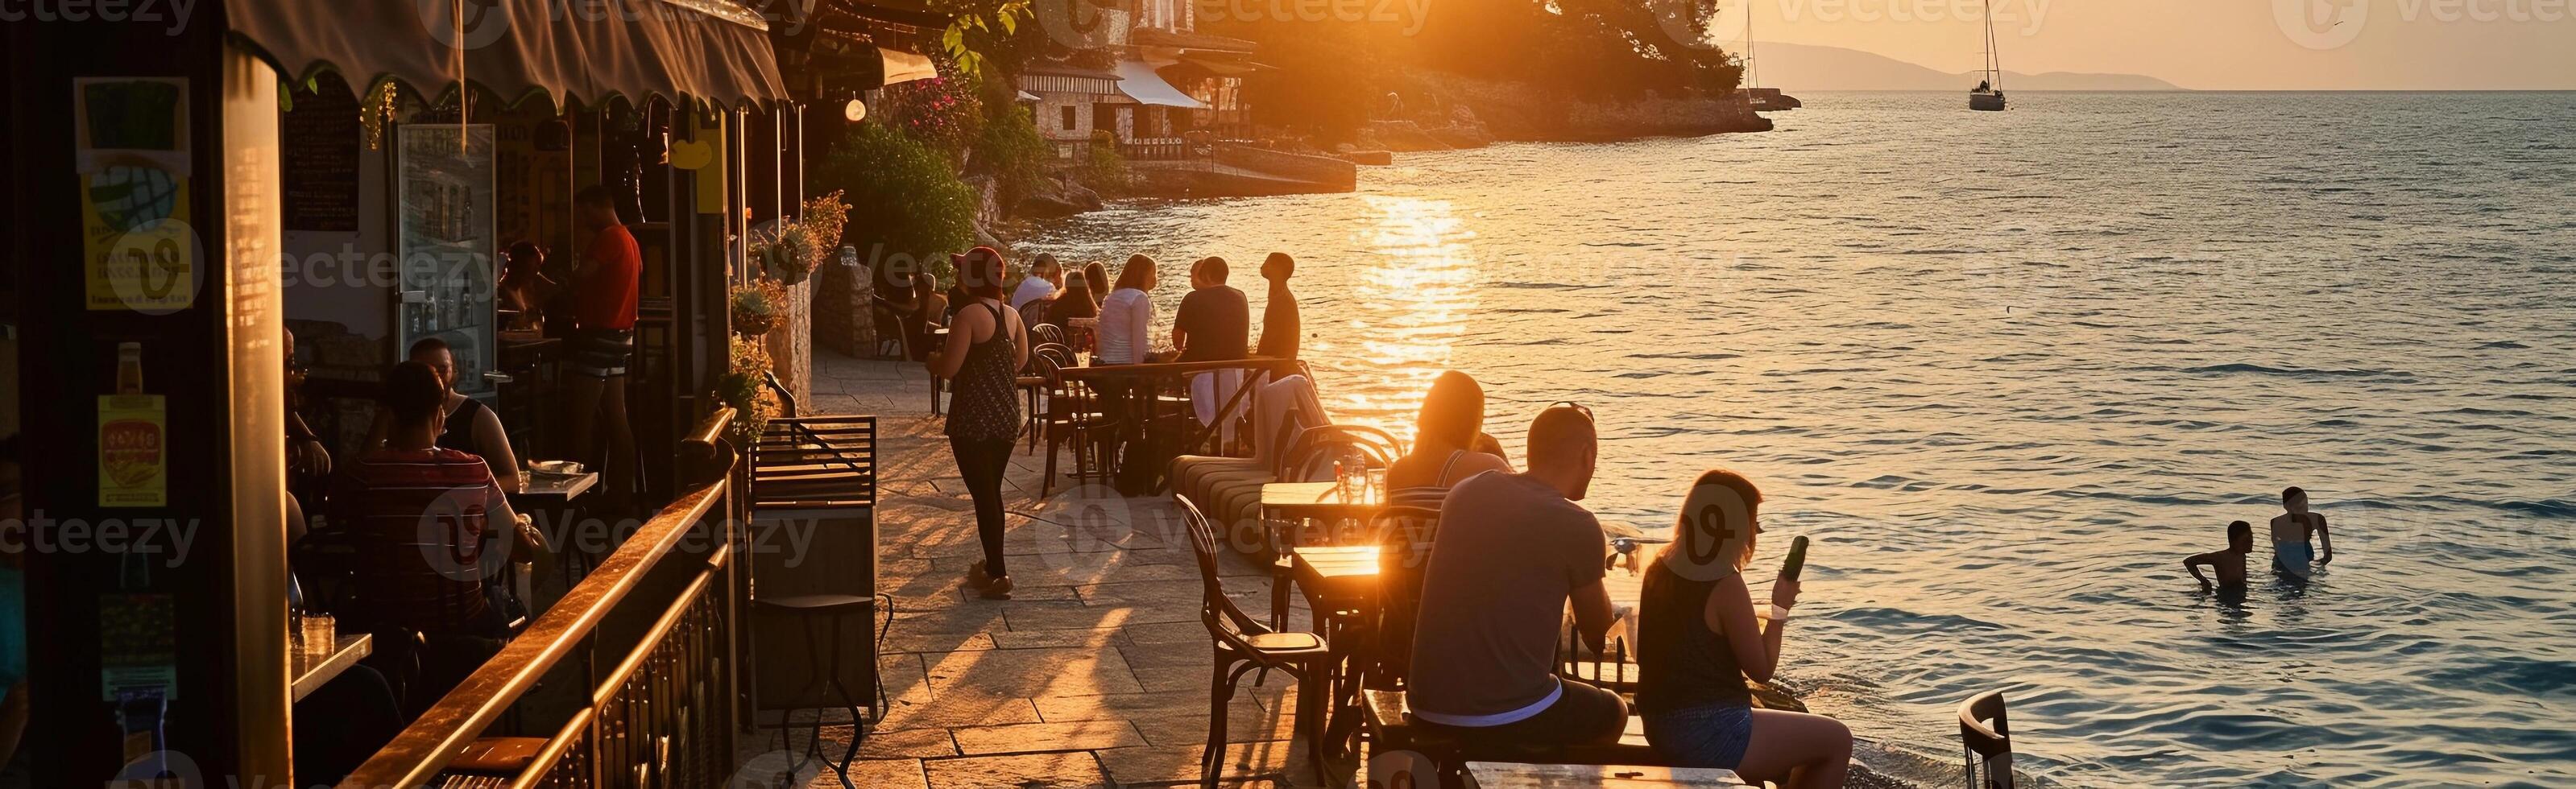 AI generated Beachside cafe scene during sunset, background image, generative AI photo